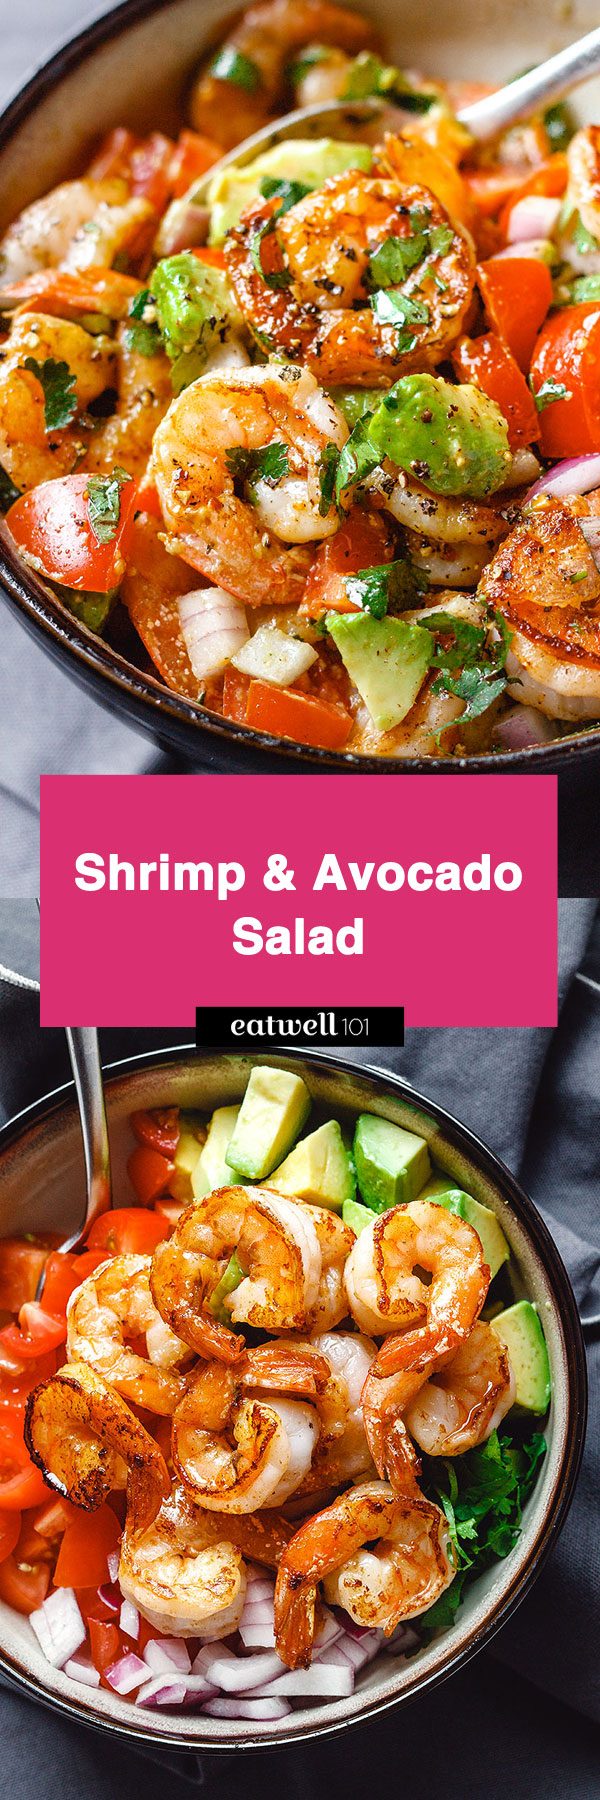 https://www.eatwell101.com/wp-content/uploads/2018/01/Shrimp-Avocado-Salad-recipe.jpg